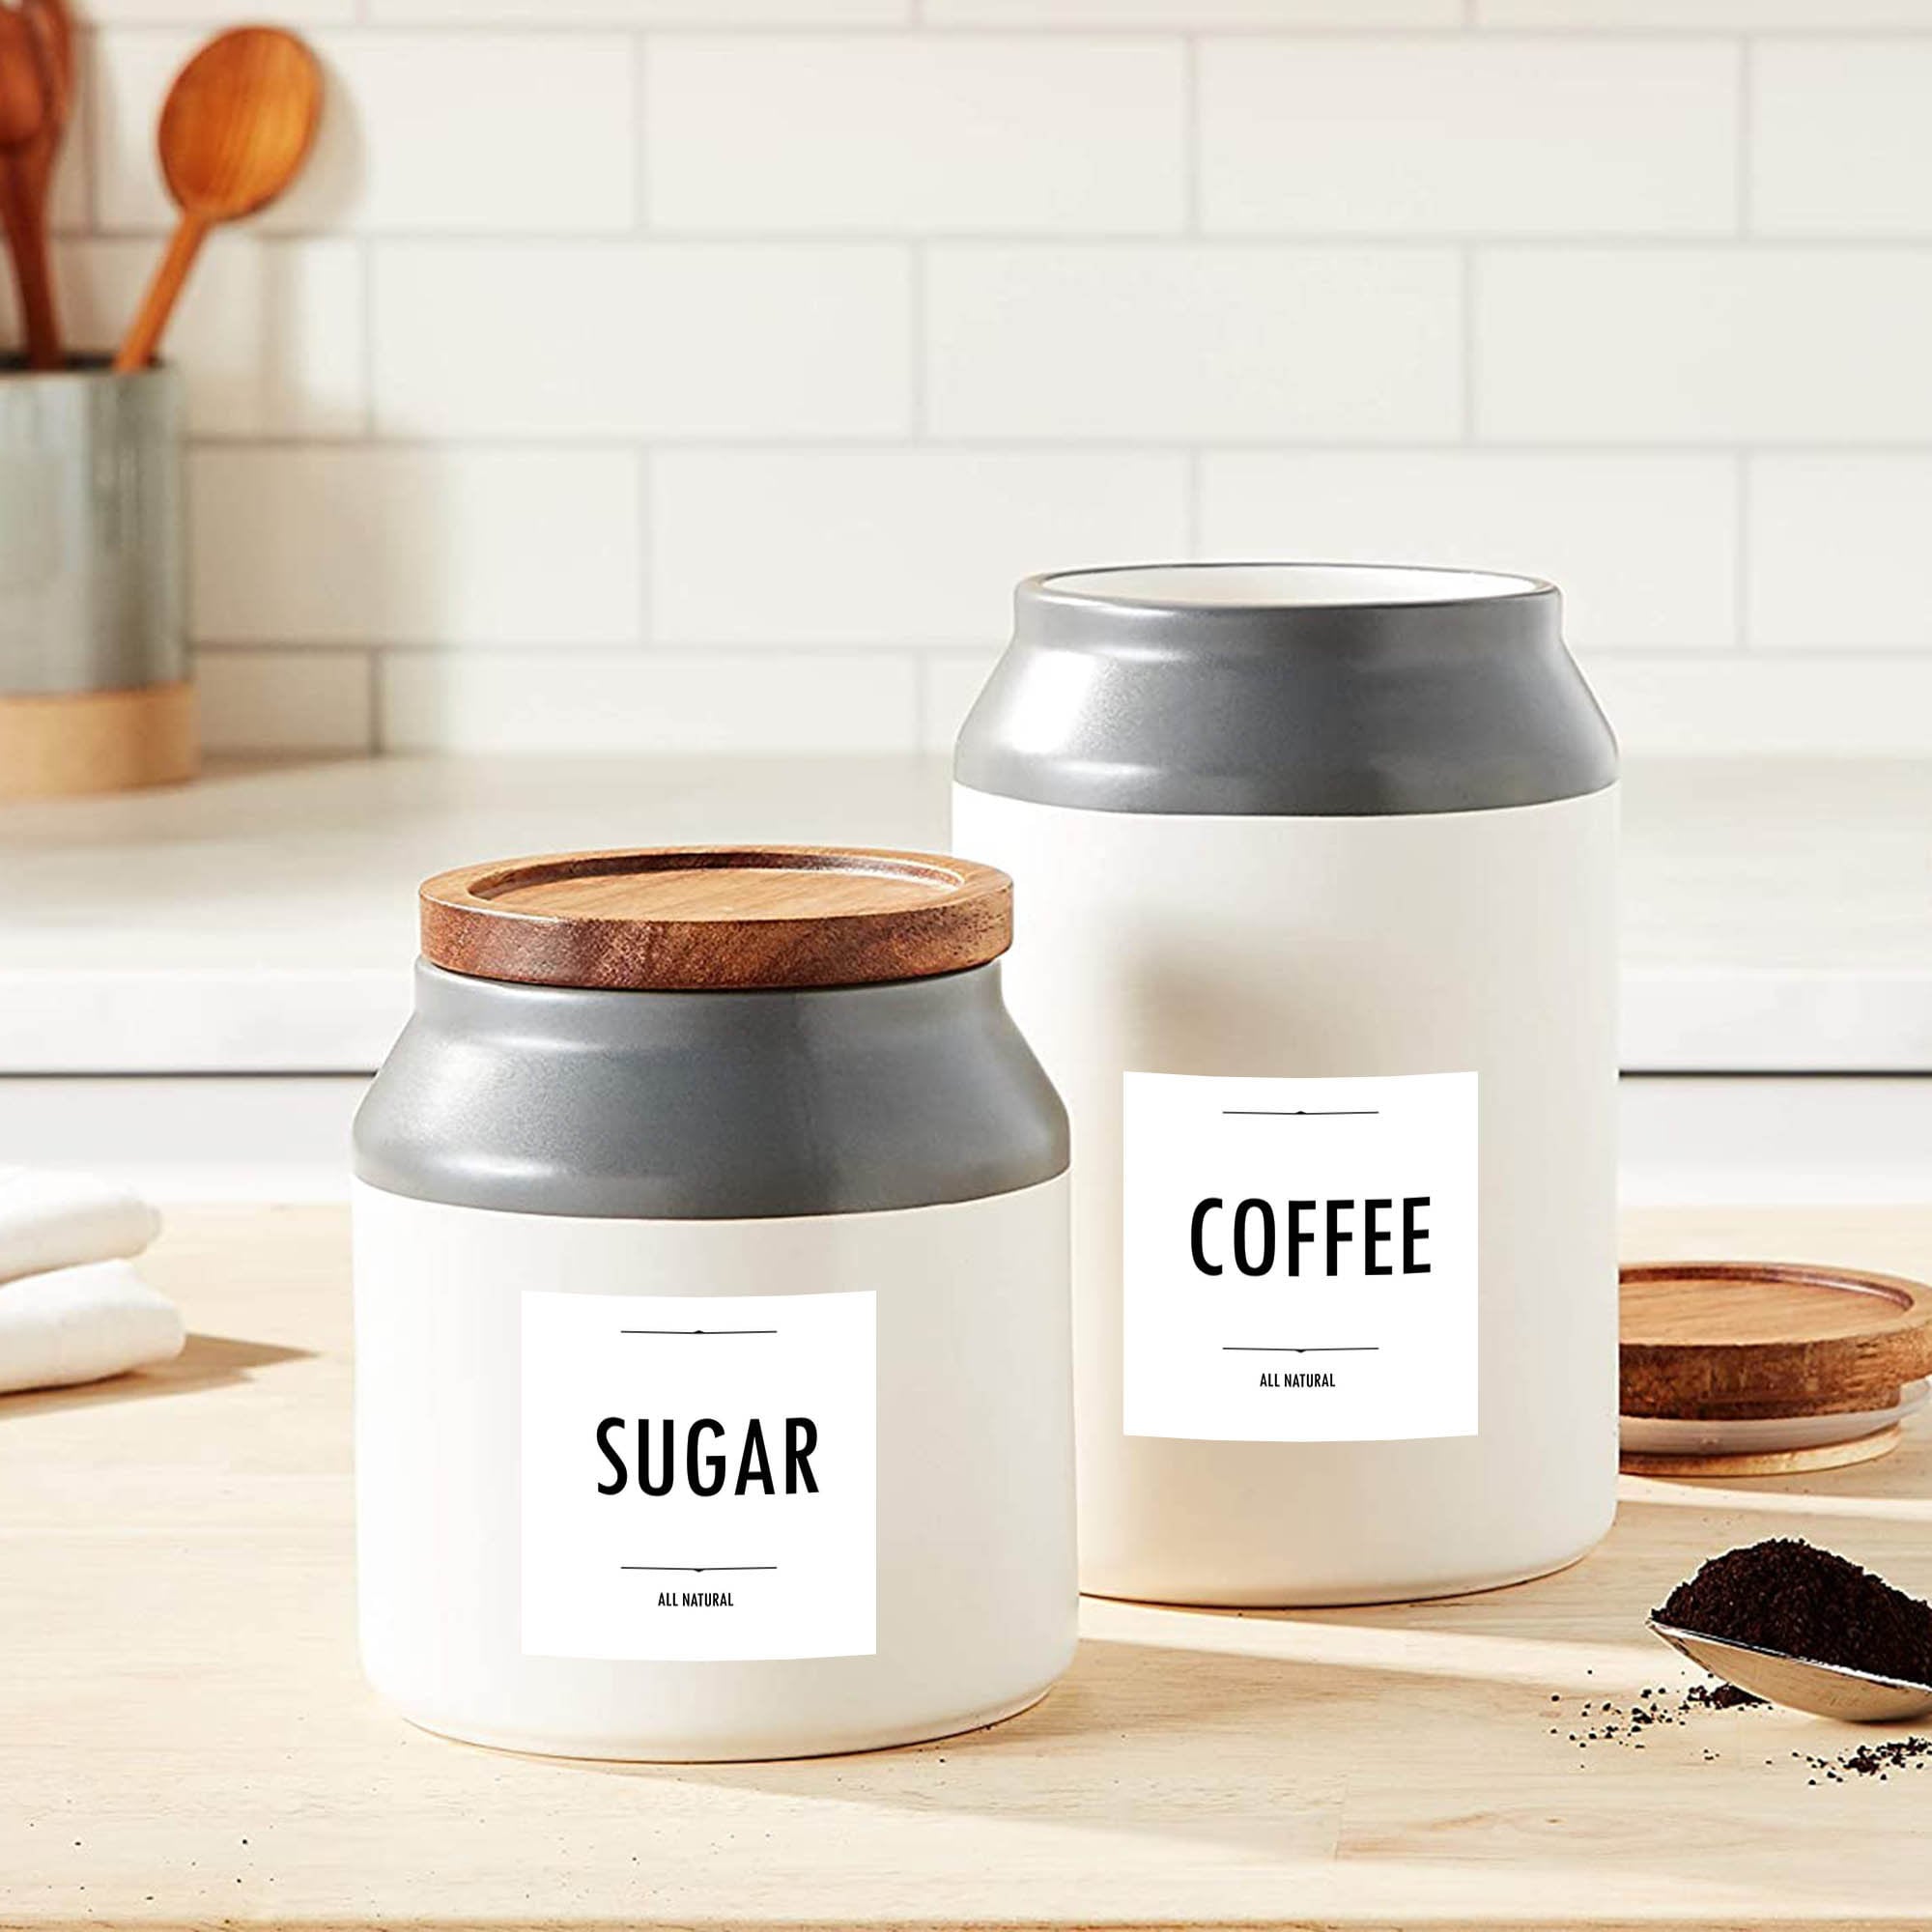 minimalist-tea-coffee-sugar-labels-kitchen-storage-container-etsy